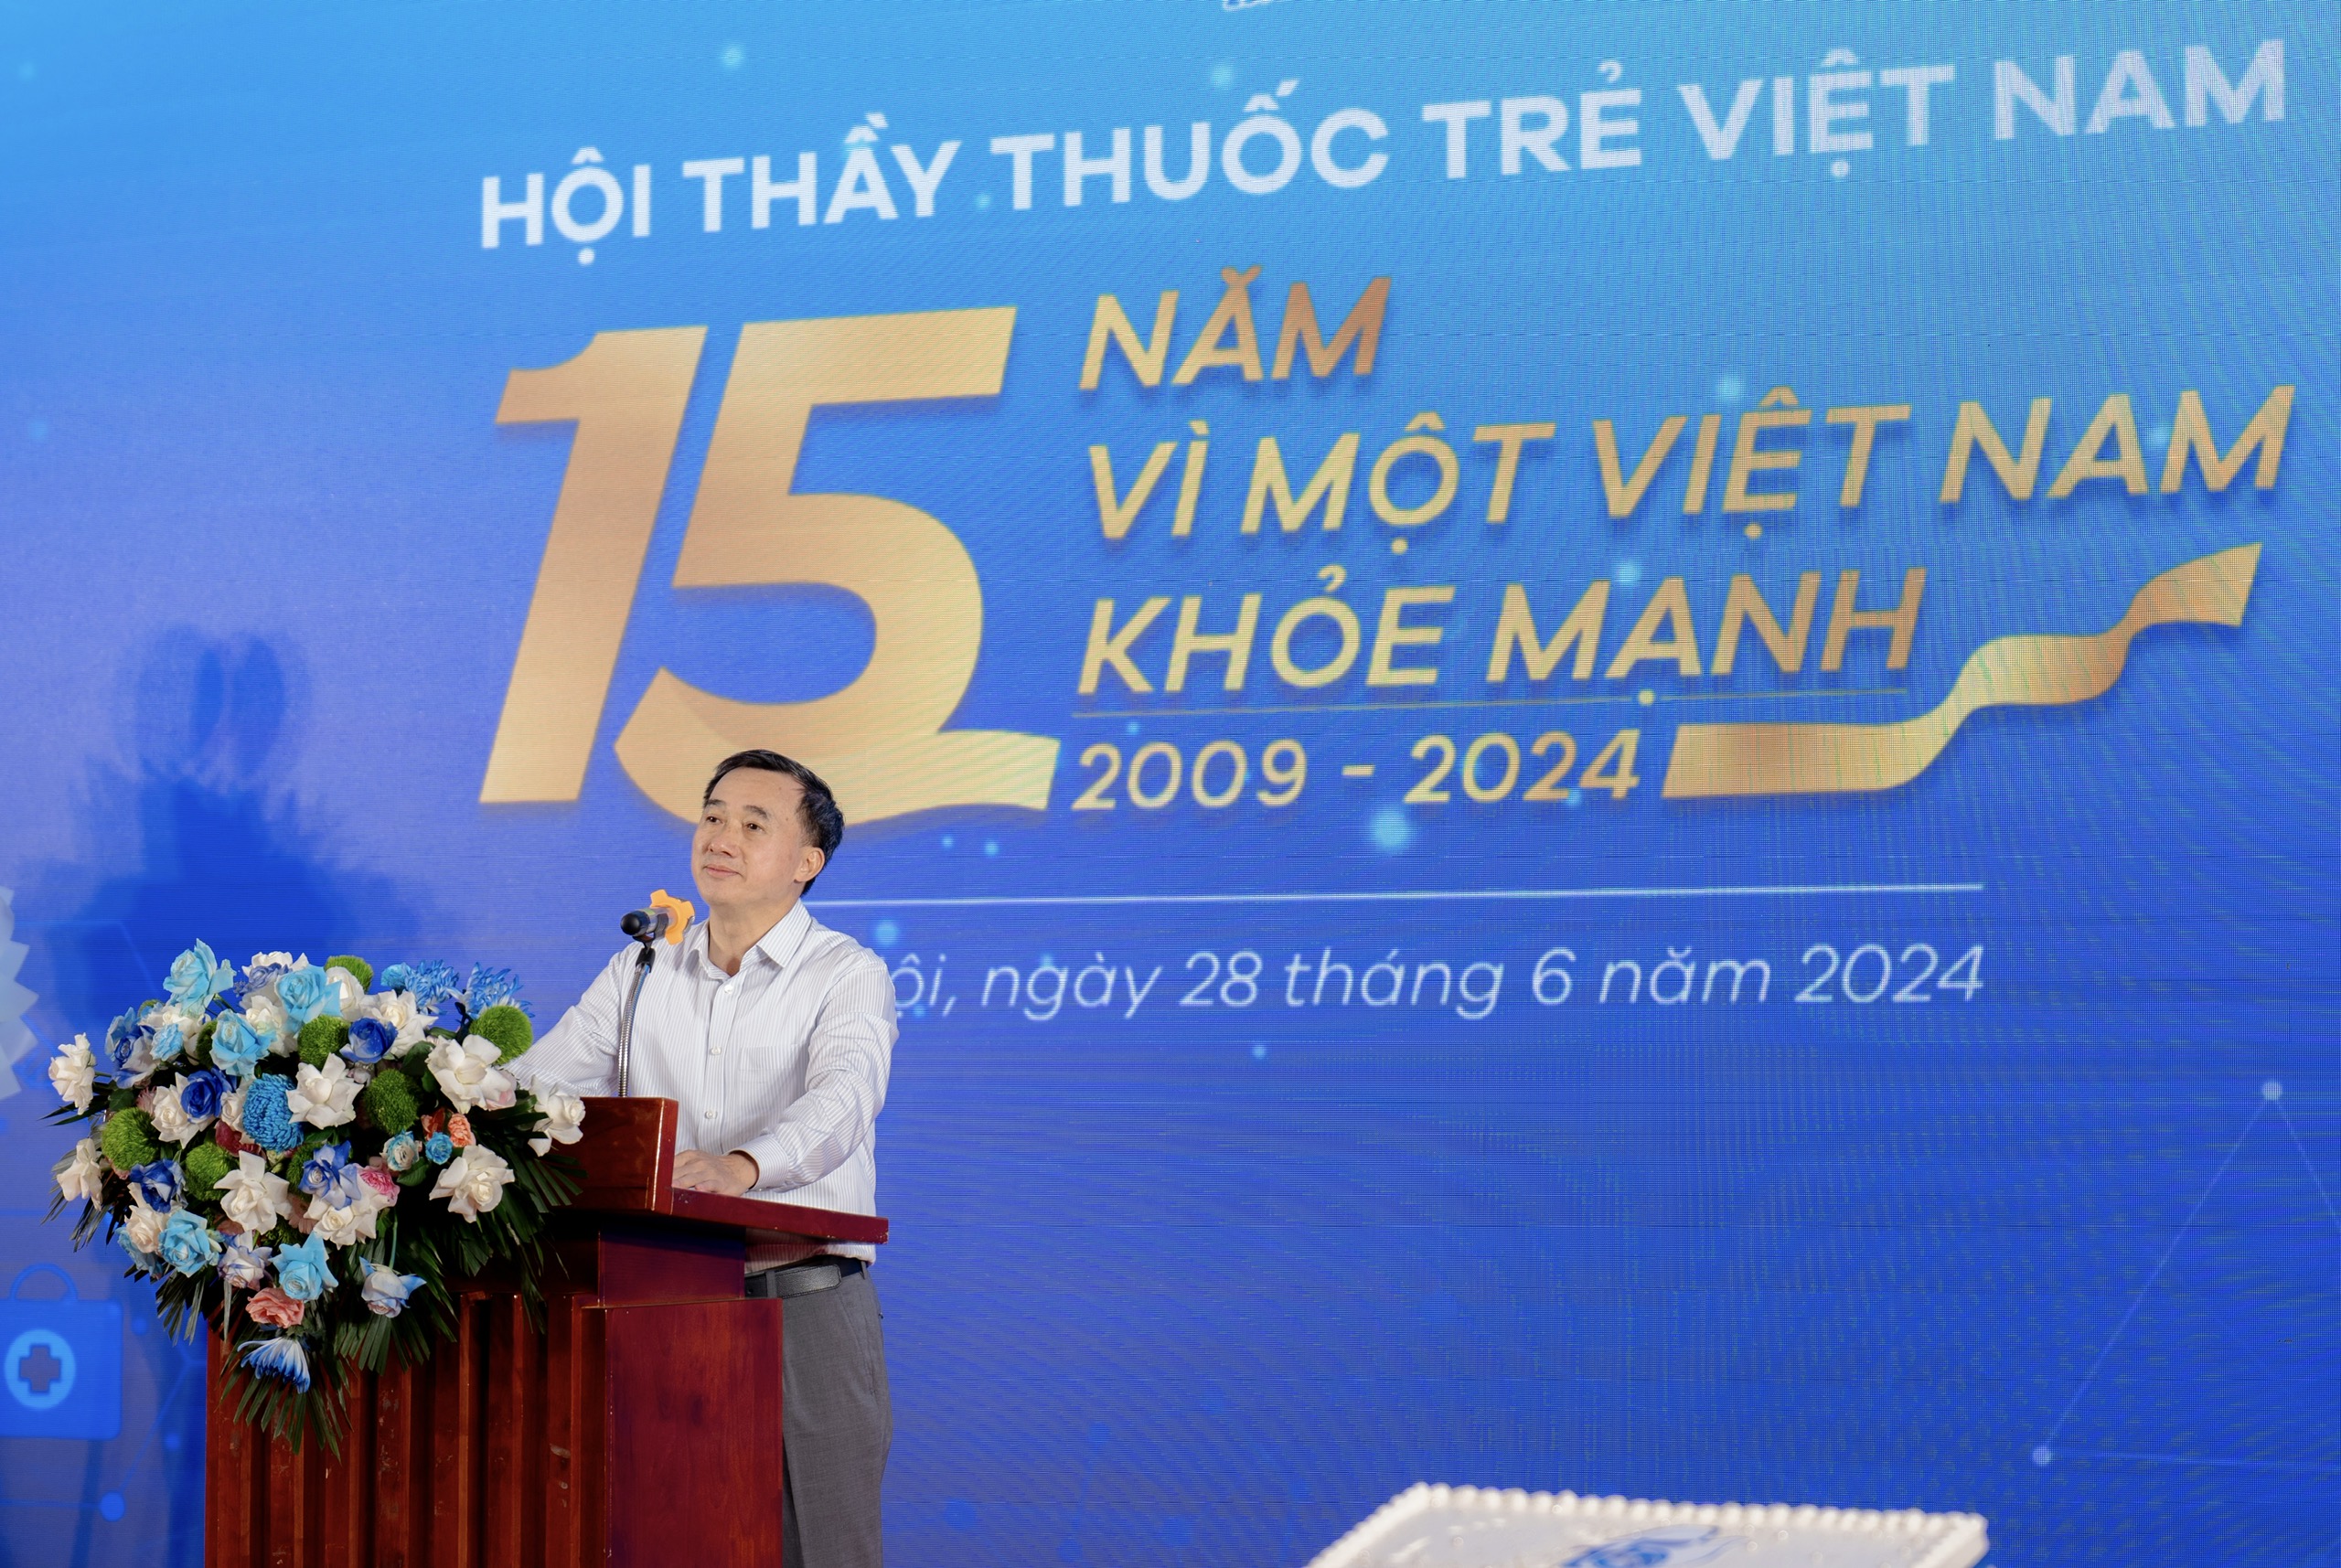 Thứ trưởng Bộ Y tế: Hội Thầy thuốc trẻ Việt Nam có nhiều đóng góp trong chăm sóc sức khỏe nhân dân- Ảnh 1.